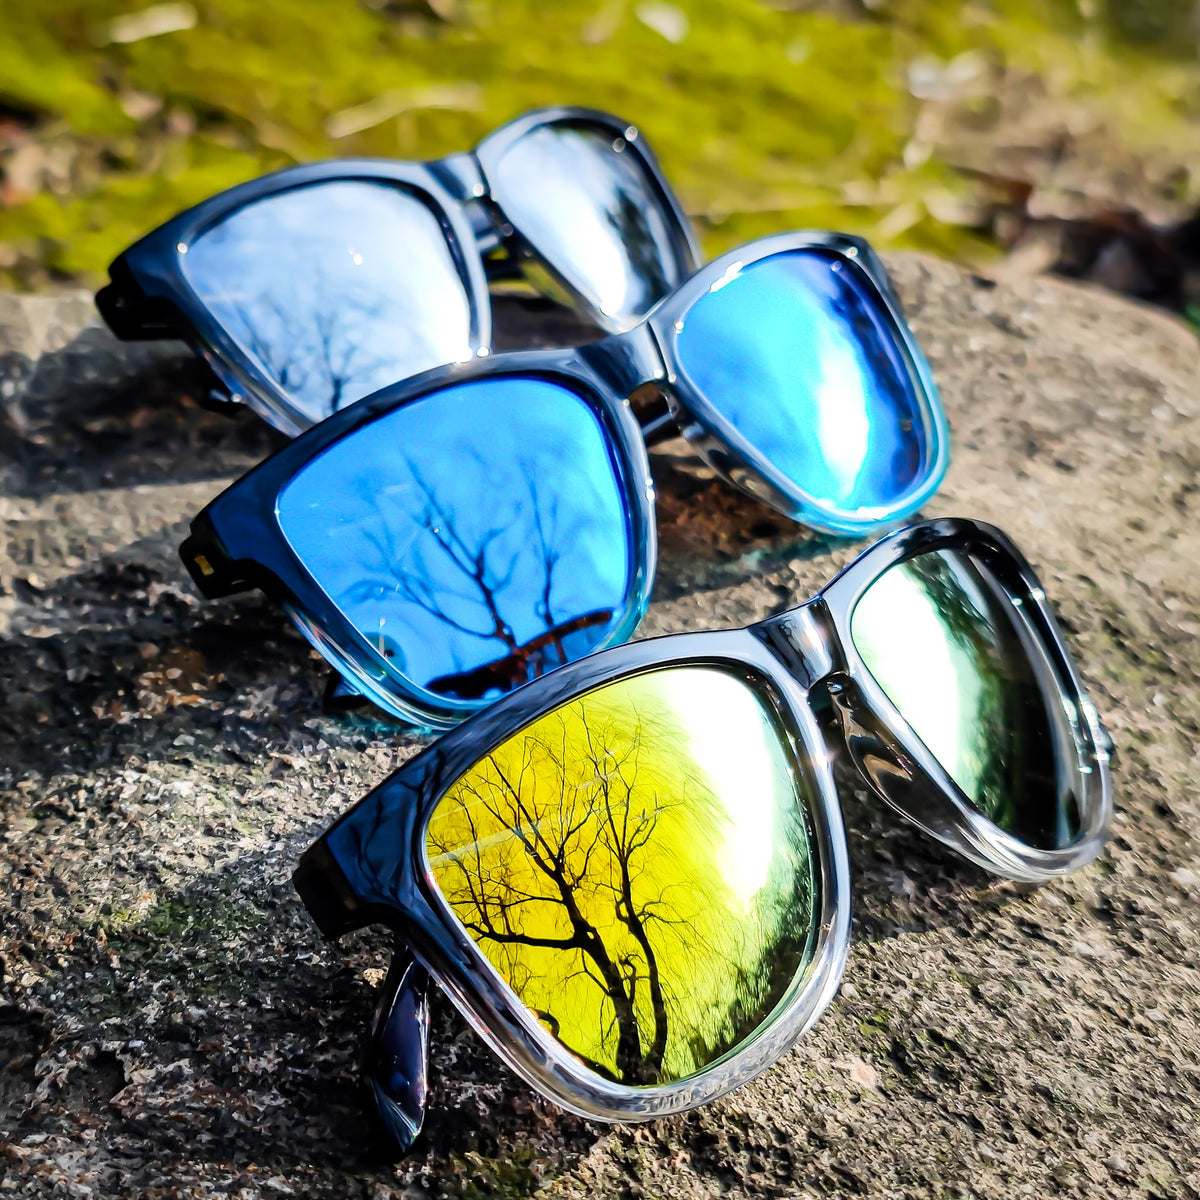 Mirrored Sunglasses for Men & Women –